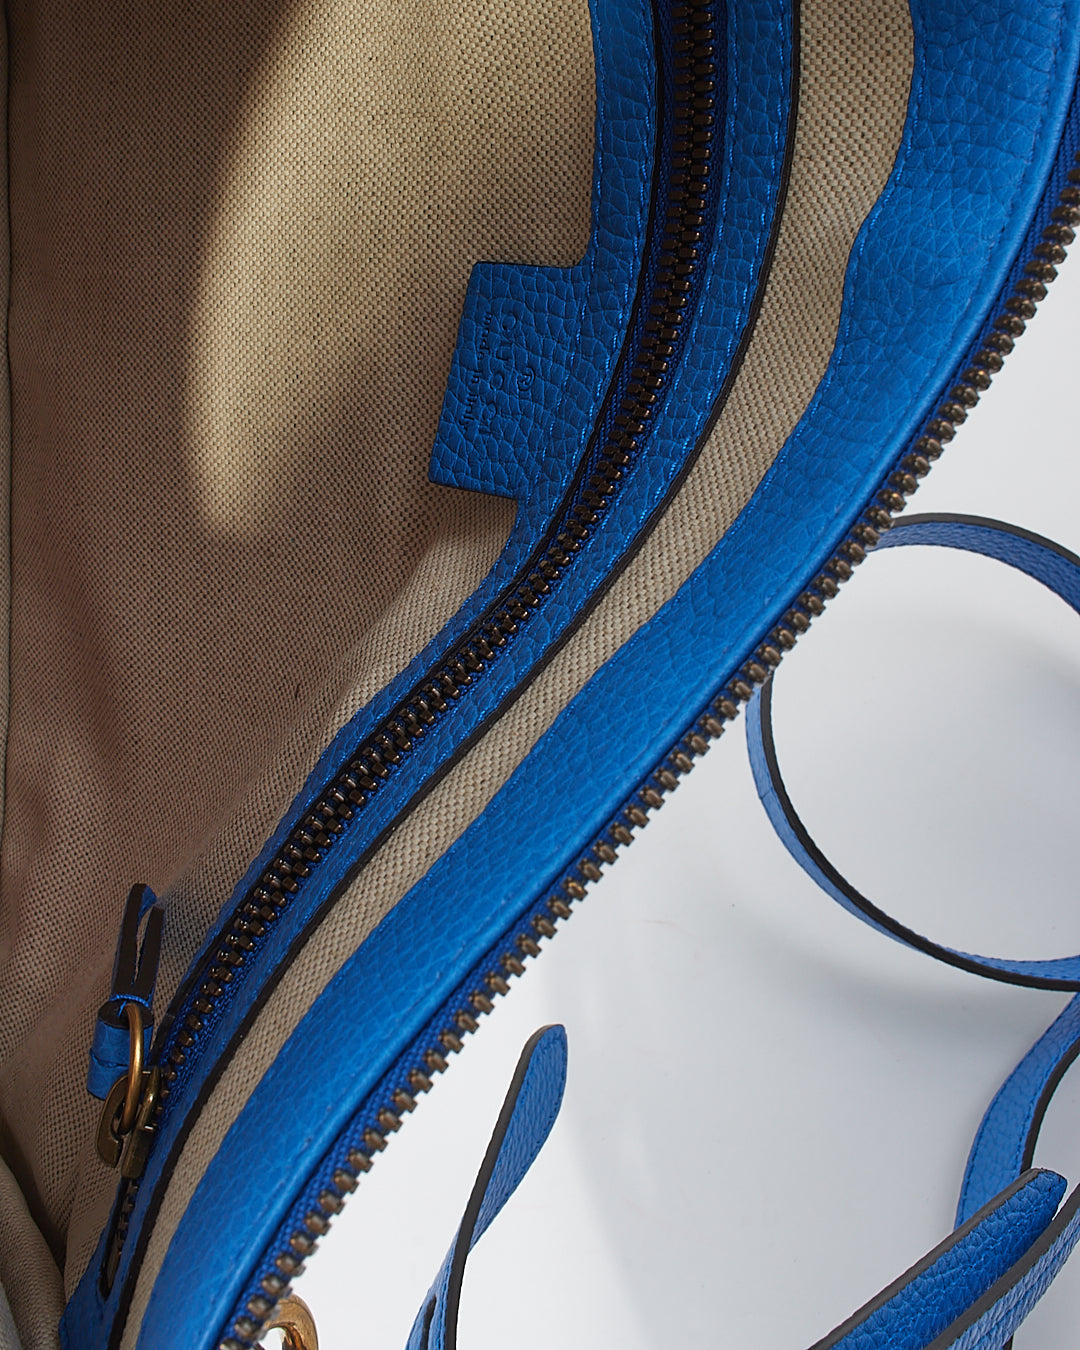 Pochette Gucci en cuir bleu imprimé tigre avec bandoulière